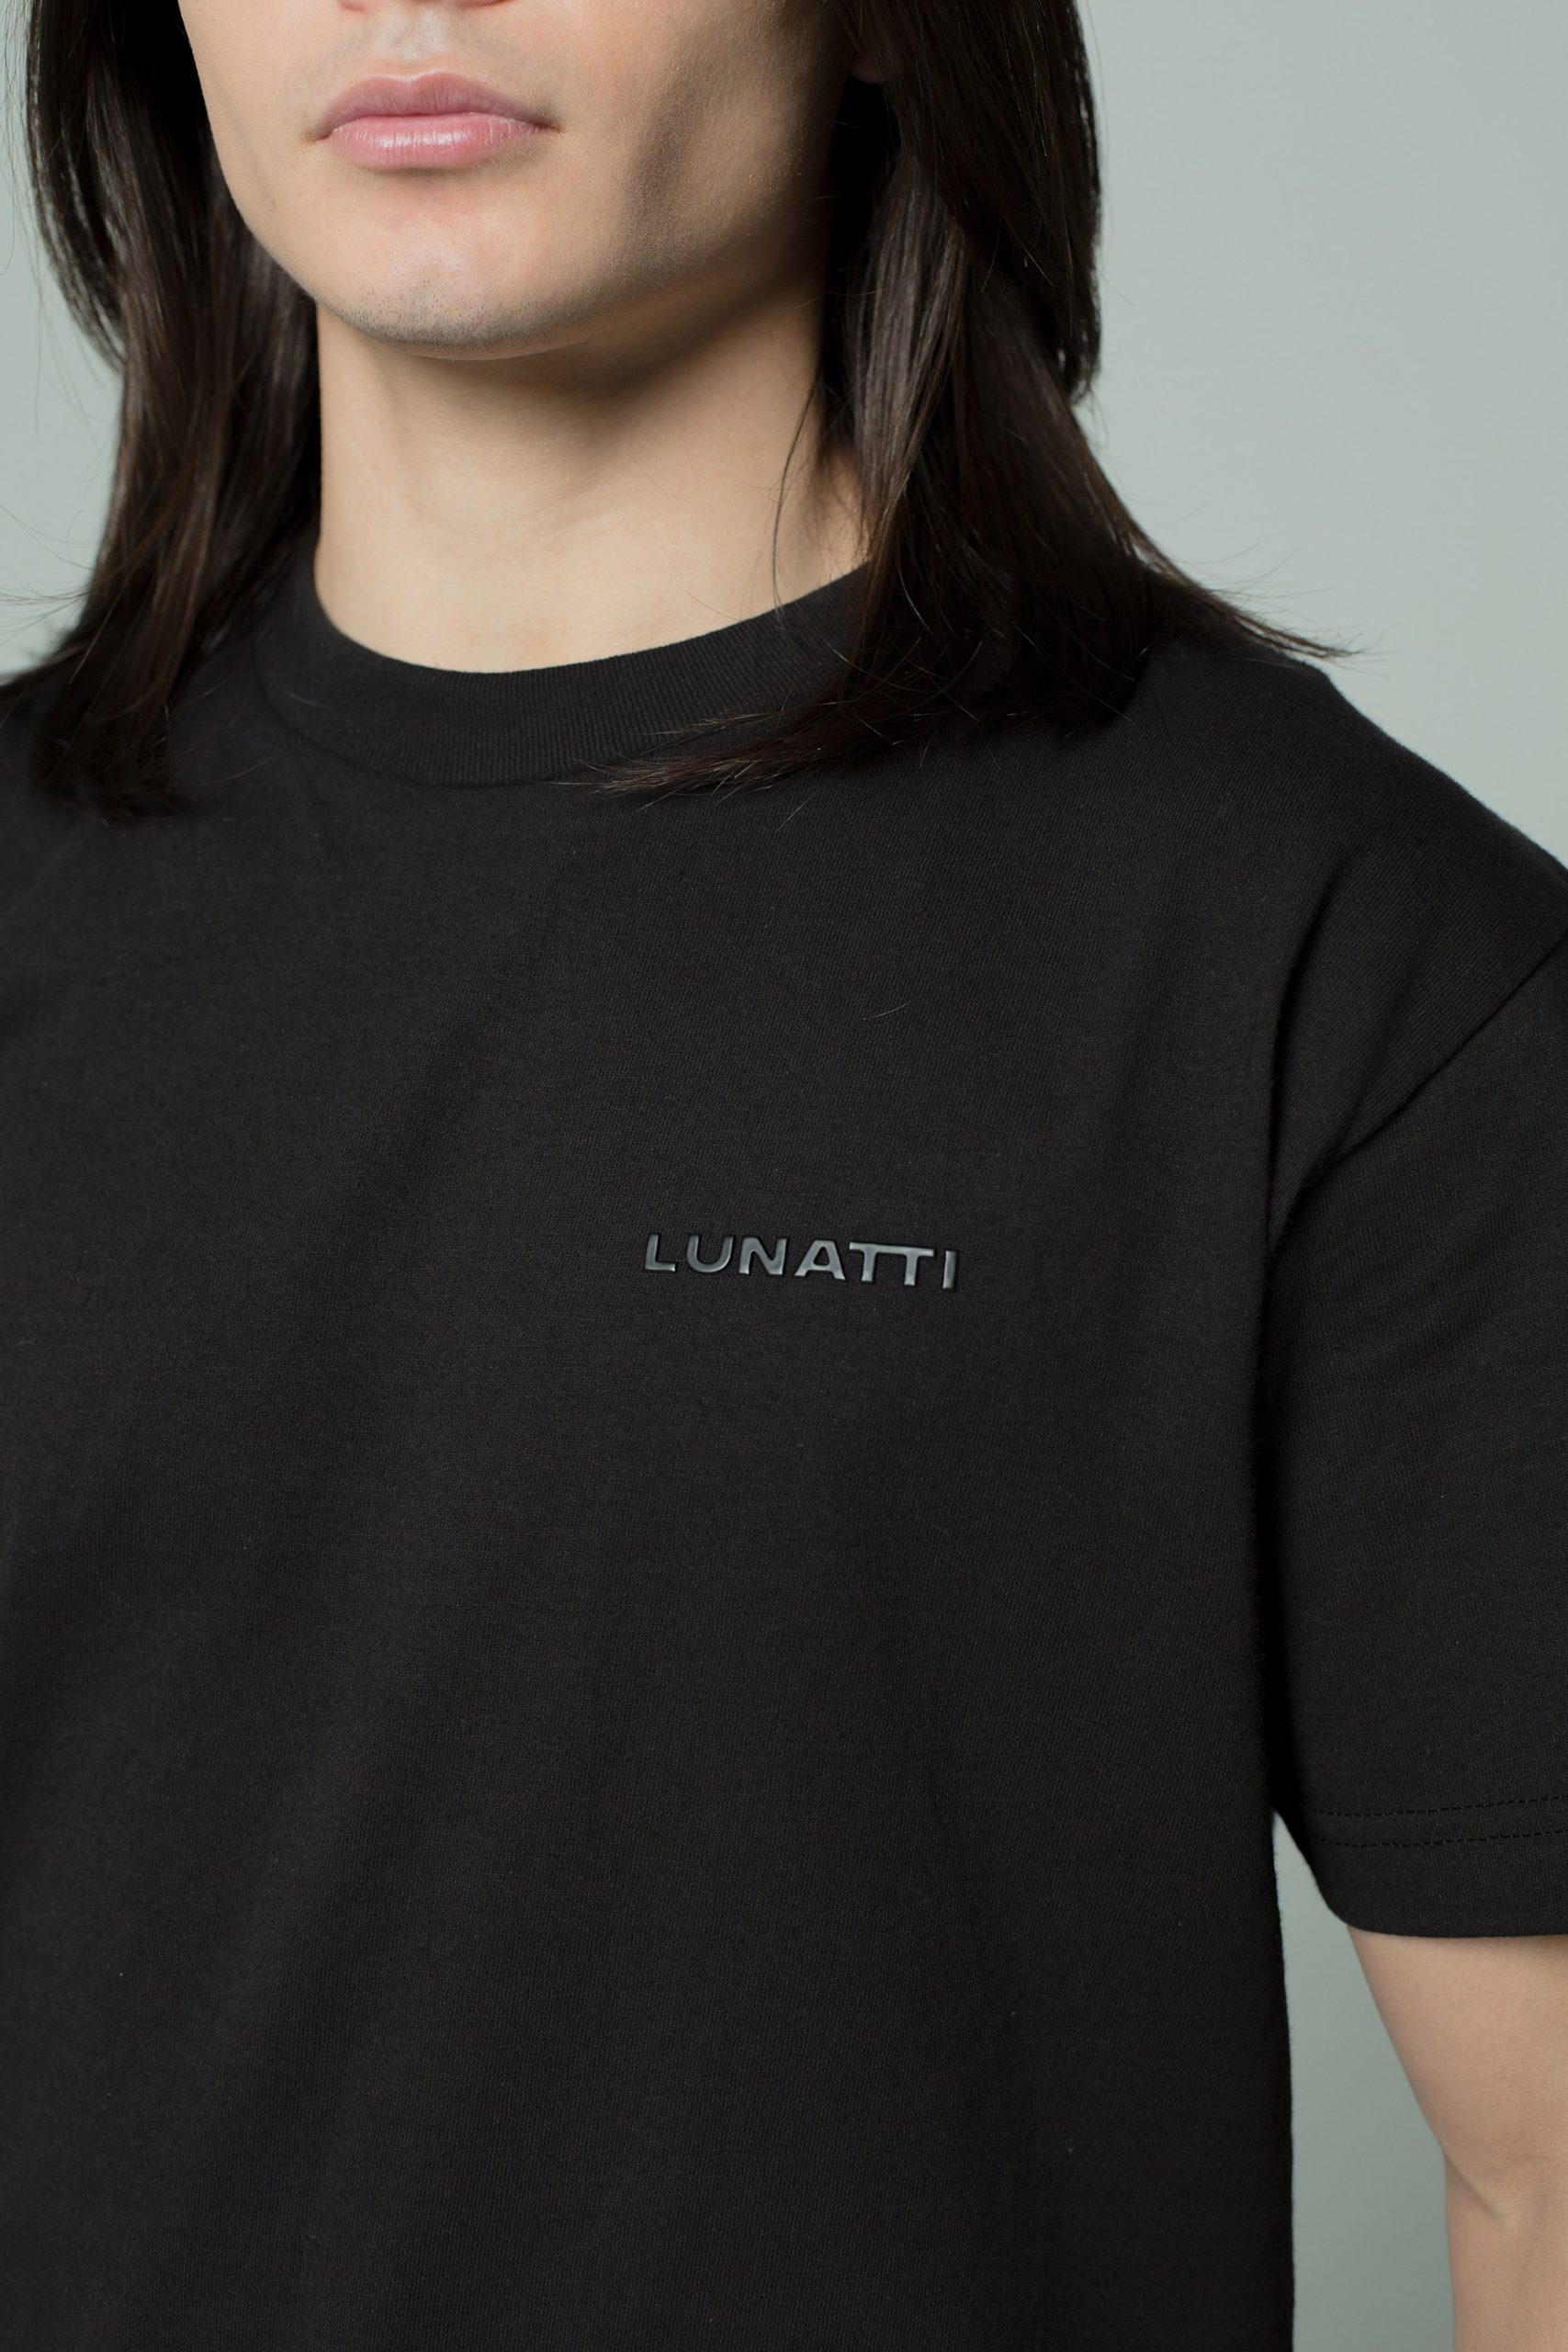 Lunatti fashion